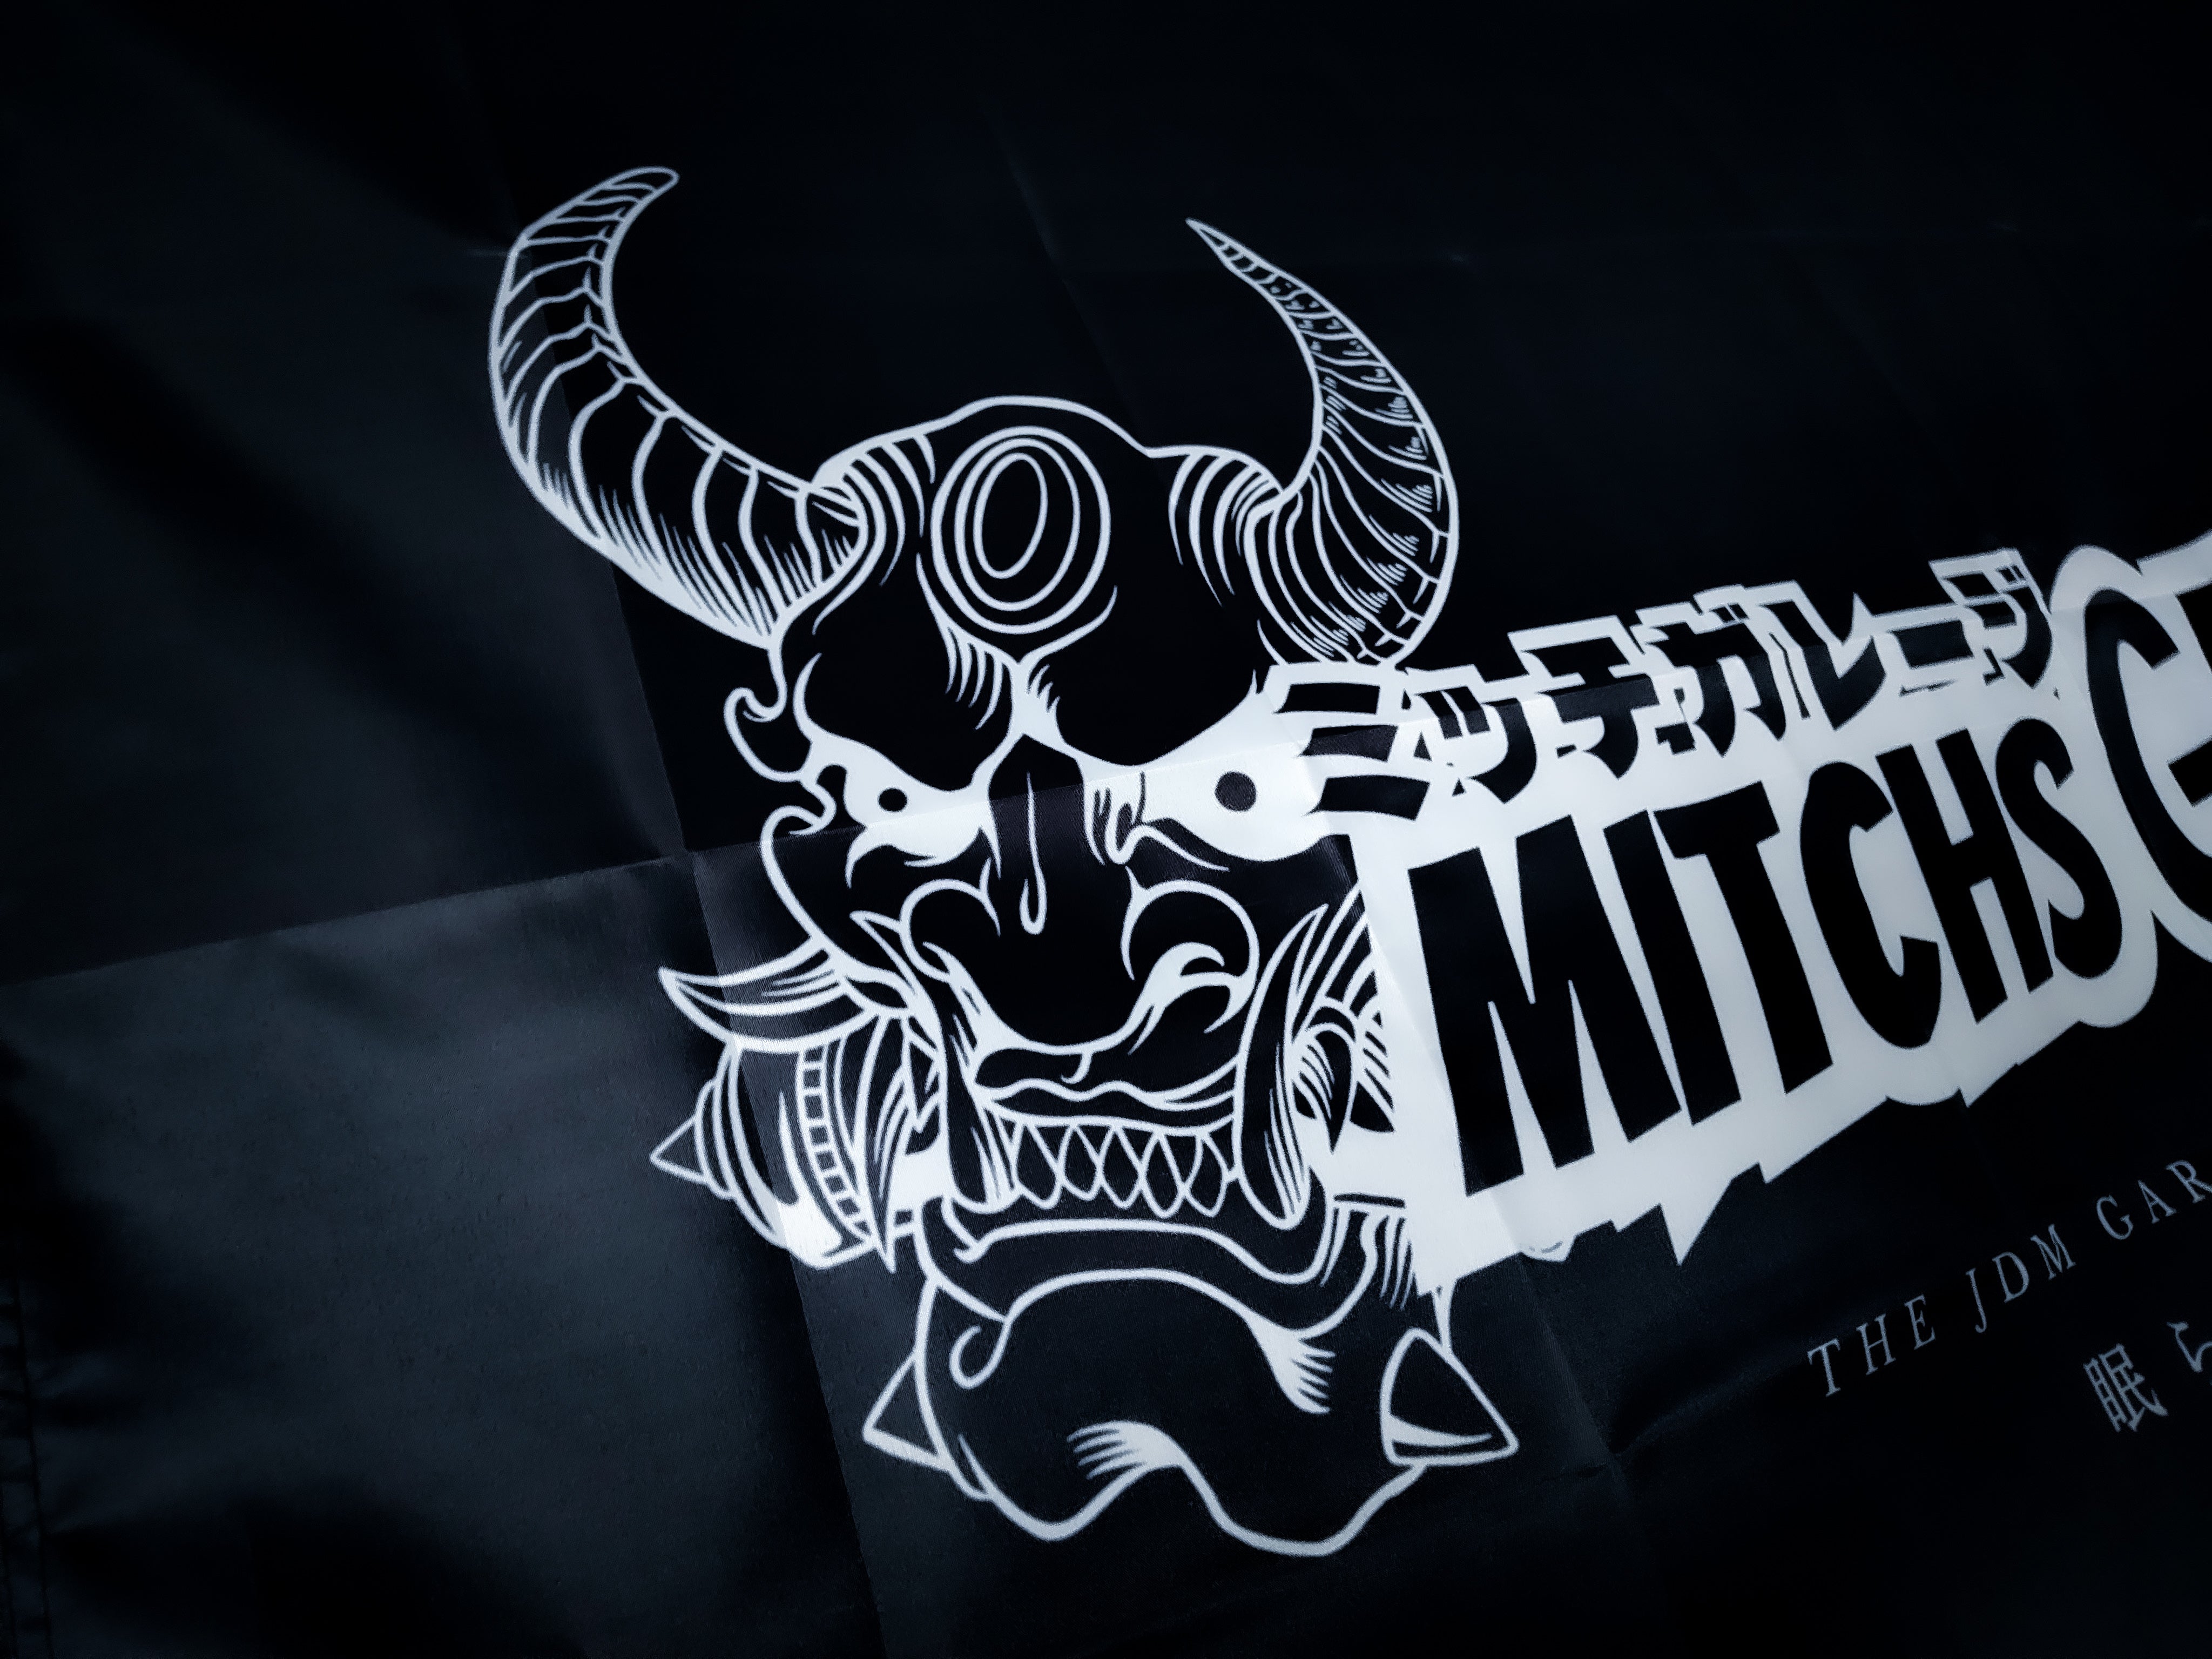 Mitch's Garage "The JDM Garage That Never Sleeps" Workshop Banner Flag